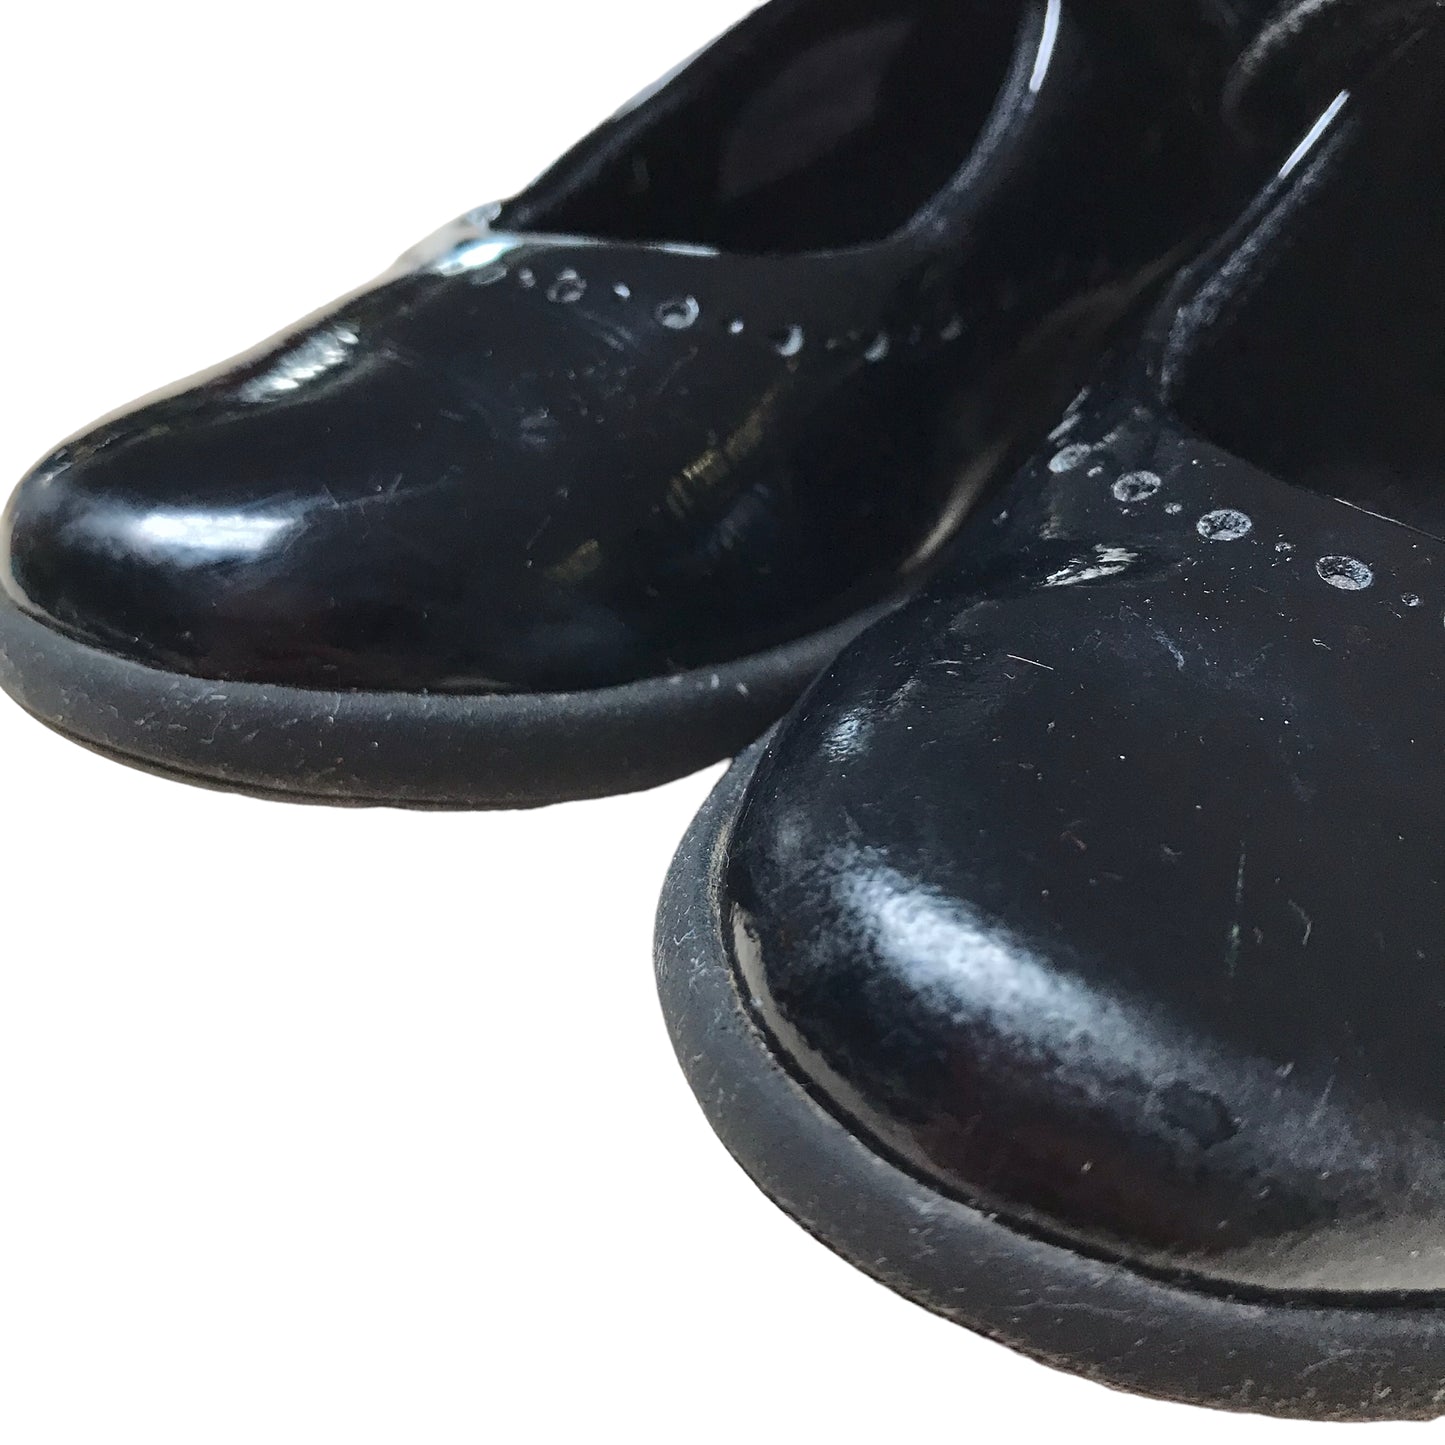 Clarks Black School Shoes Shoe Size 11F junior